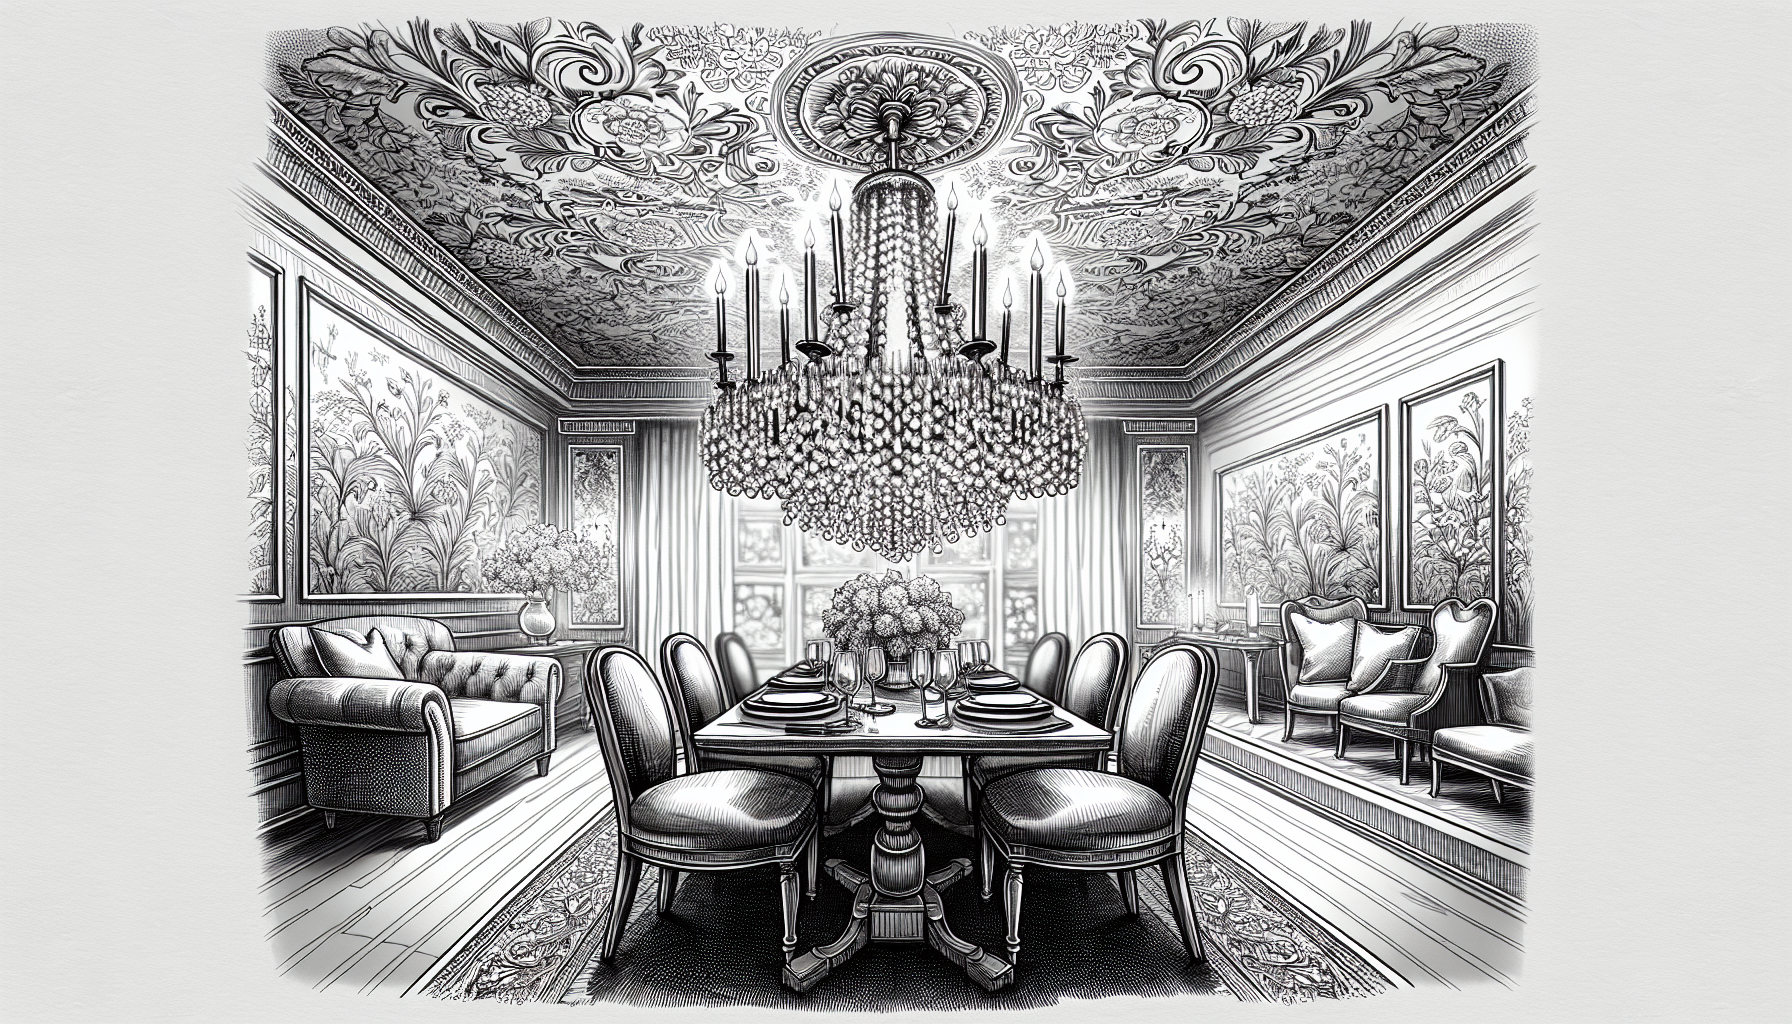 Wallpaper Borders For Dining Rooms: Elegant Edges